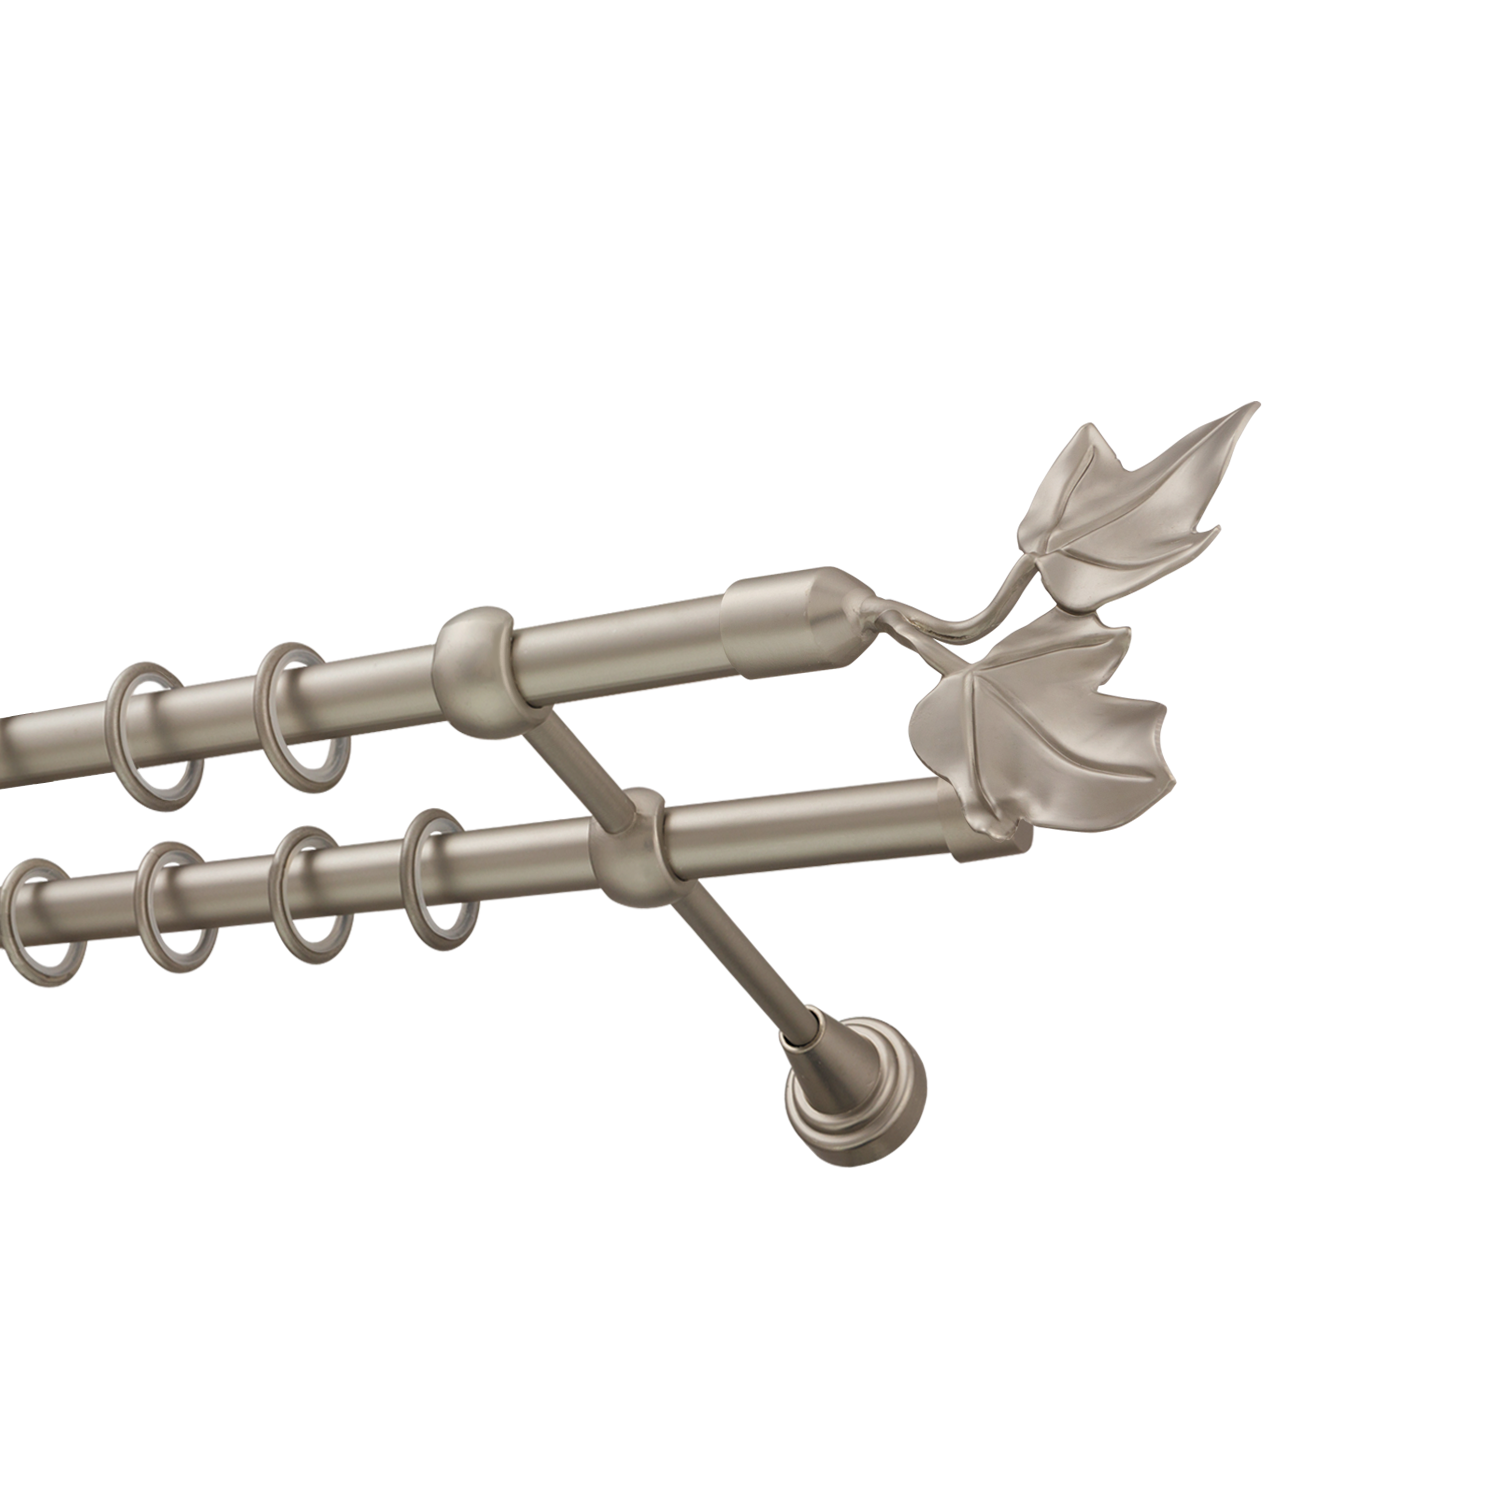 Металлический карниз для штор Листья, двухрядный 16/16 мм, сталь, гладкая штанга, длина 300 см - фото Wikidecor.ru